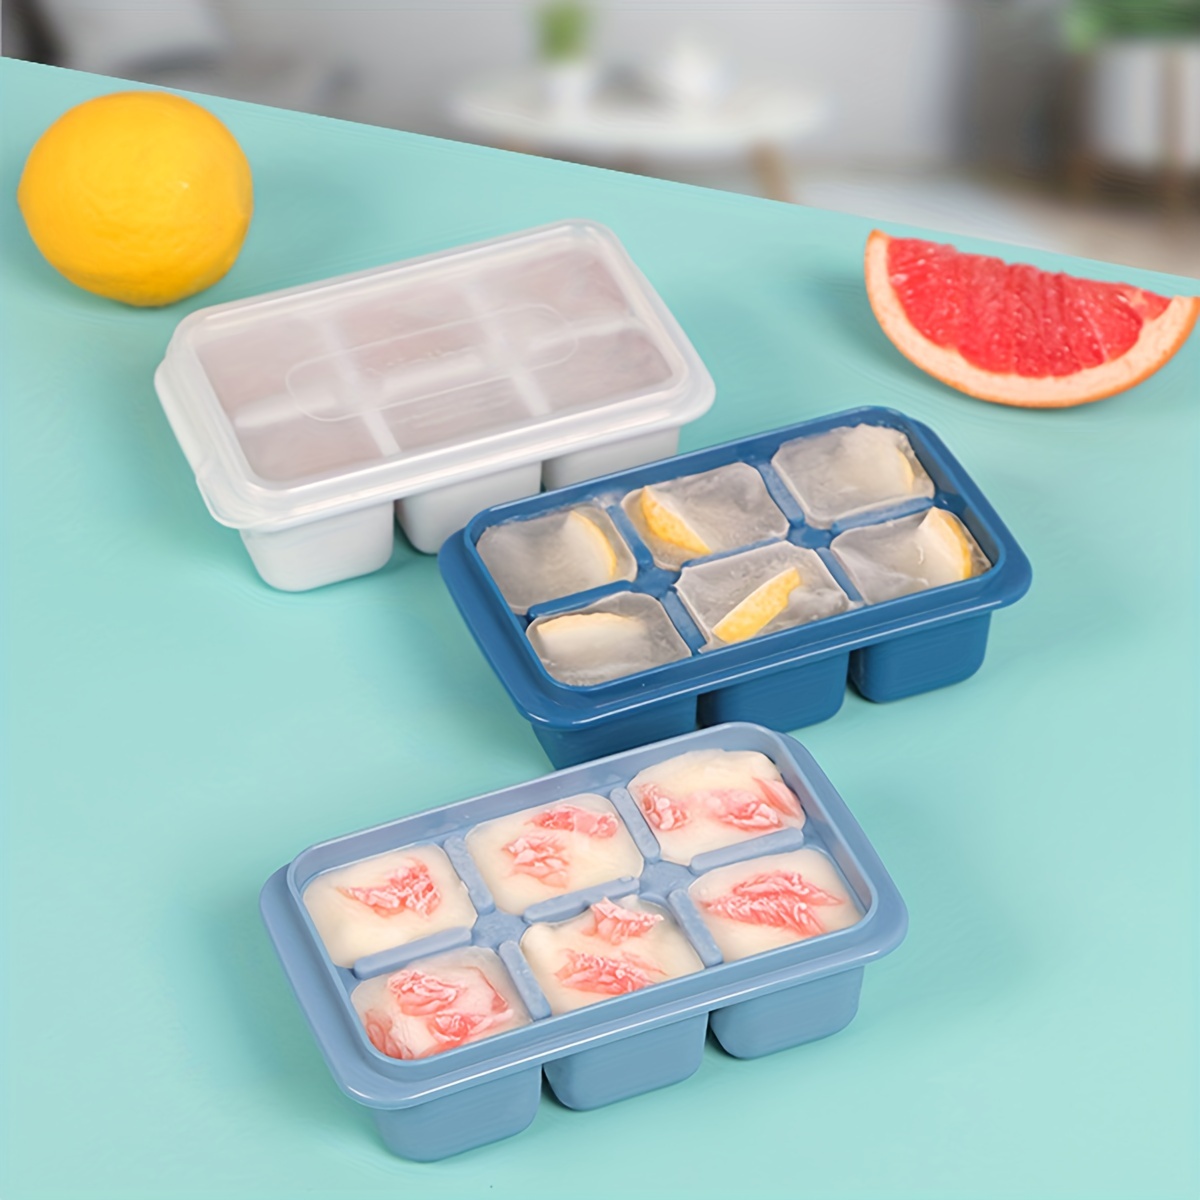 

3pcs-ice Tray Ice Cubes Making Ice Freezing Mold Quick Freezer Home Refrigerator Diy Internet Celebrity Freezing Box With Lid Silicone